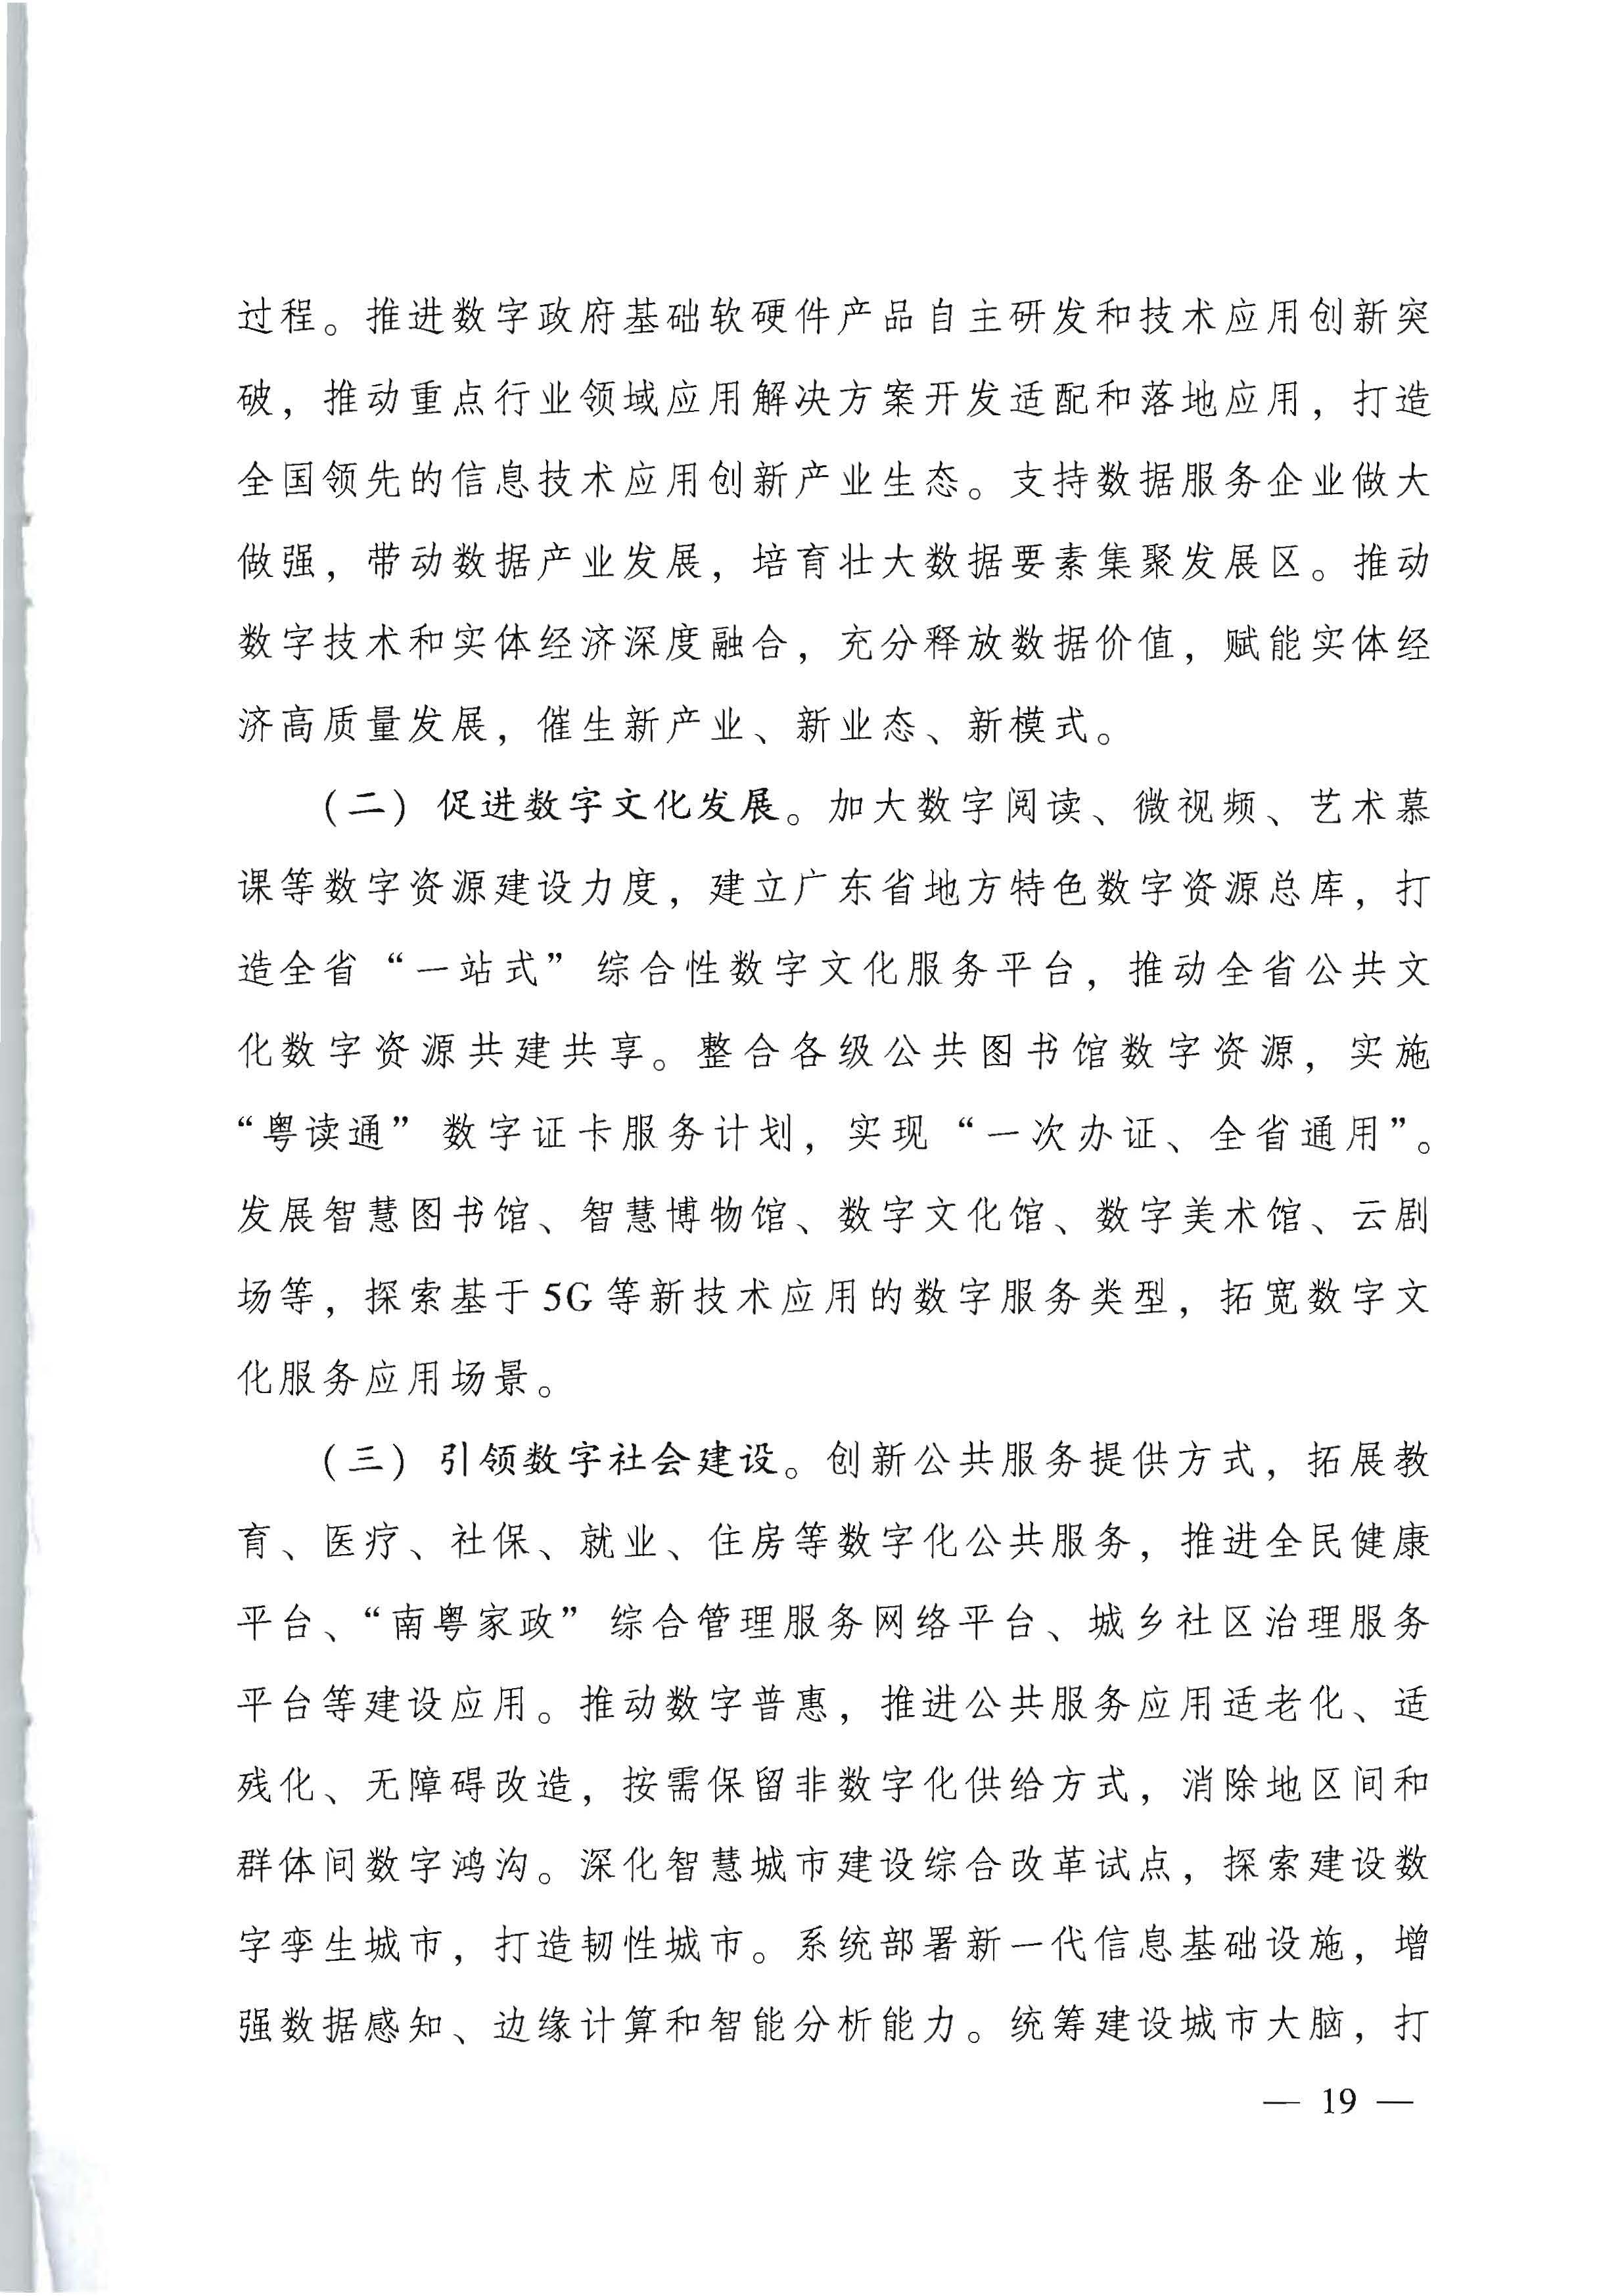 广东省人民政府关于进一步深化数字政府改革建设的实施意见_页面_19.jpg